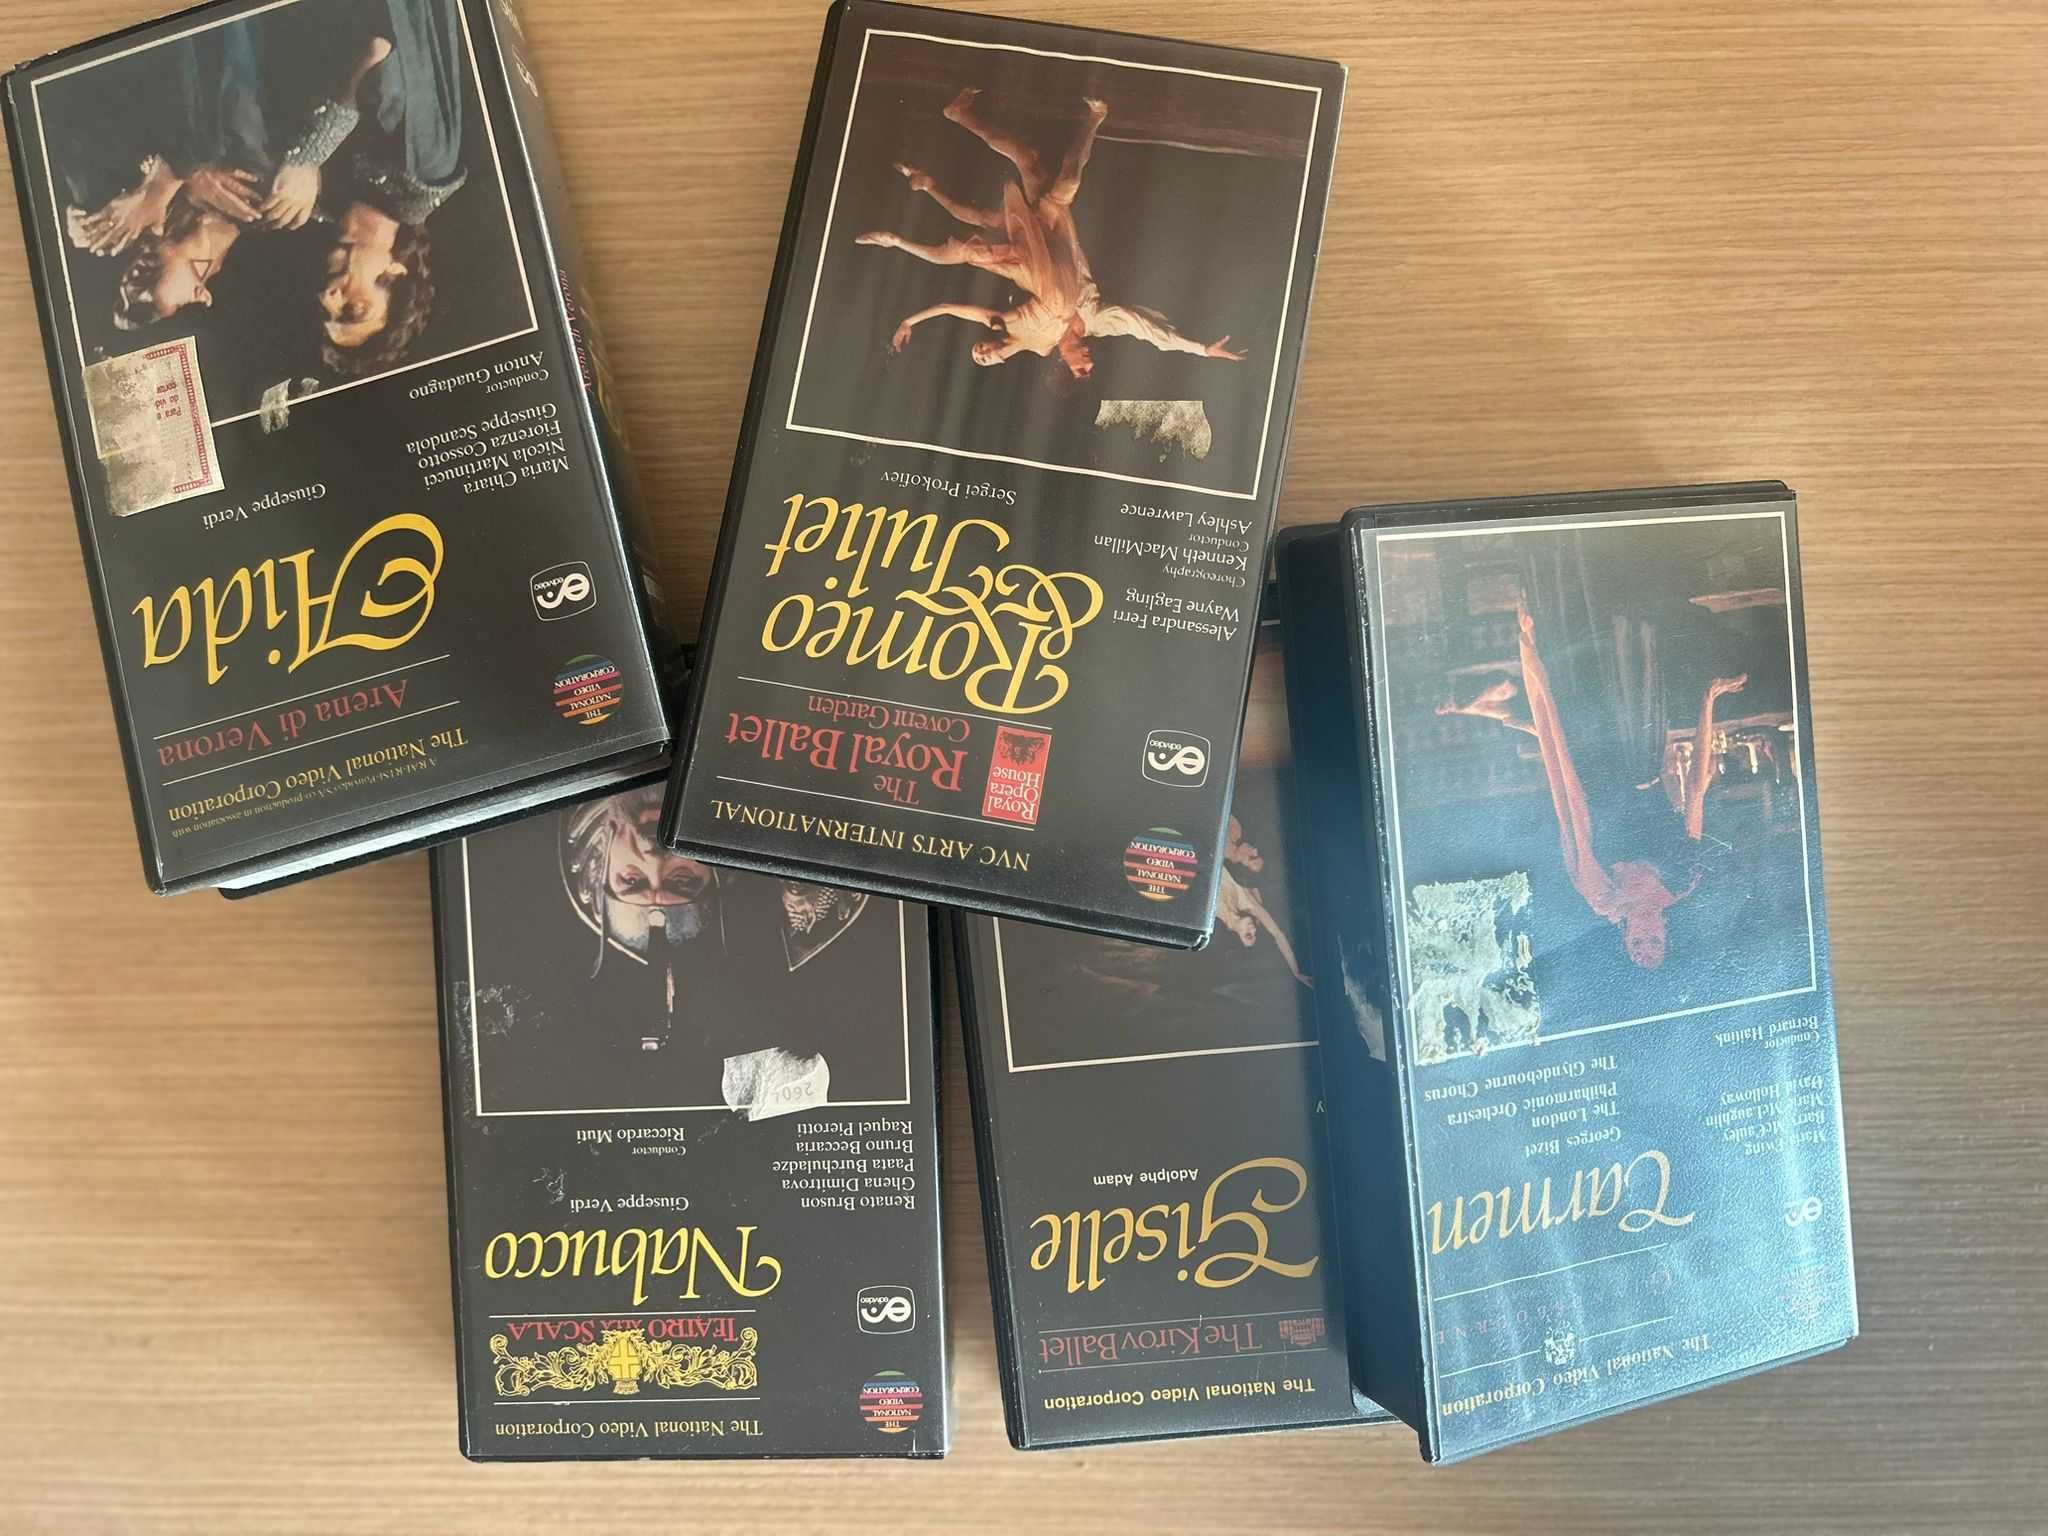 VHS FITAS DE OPERAS